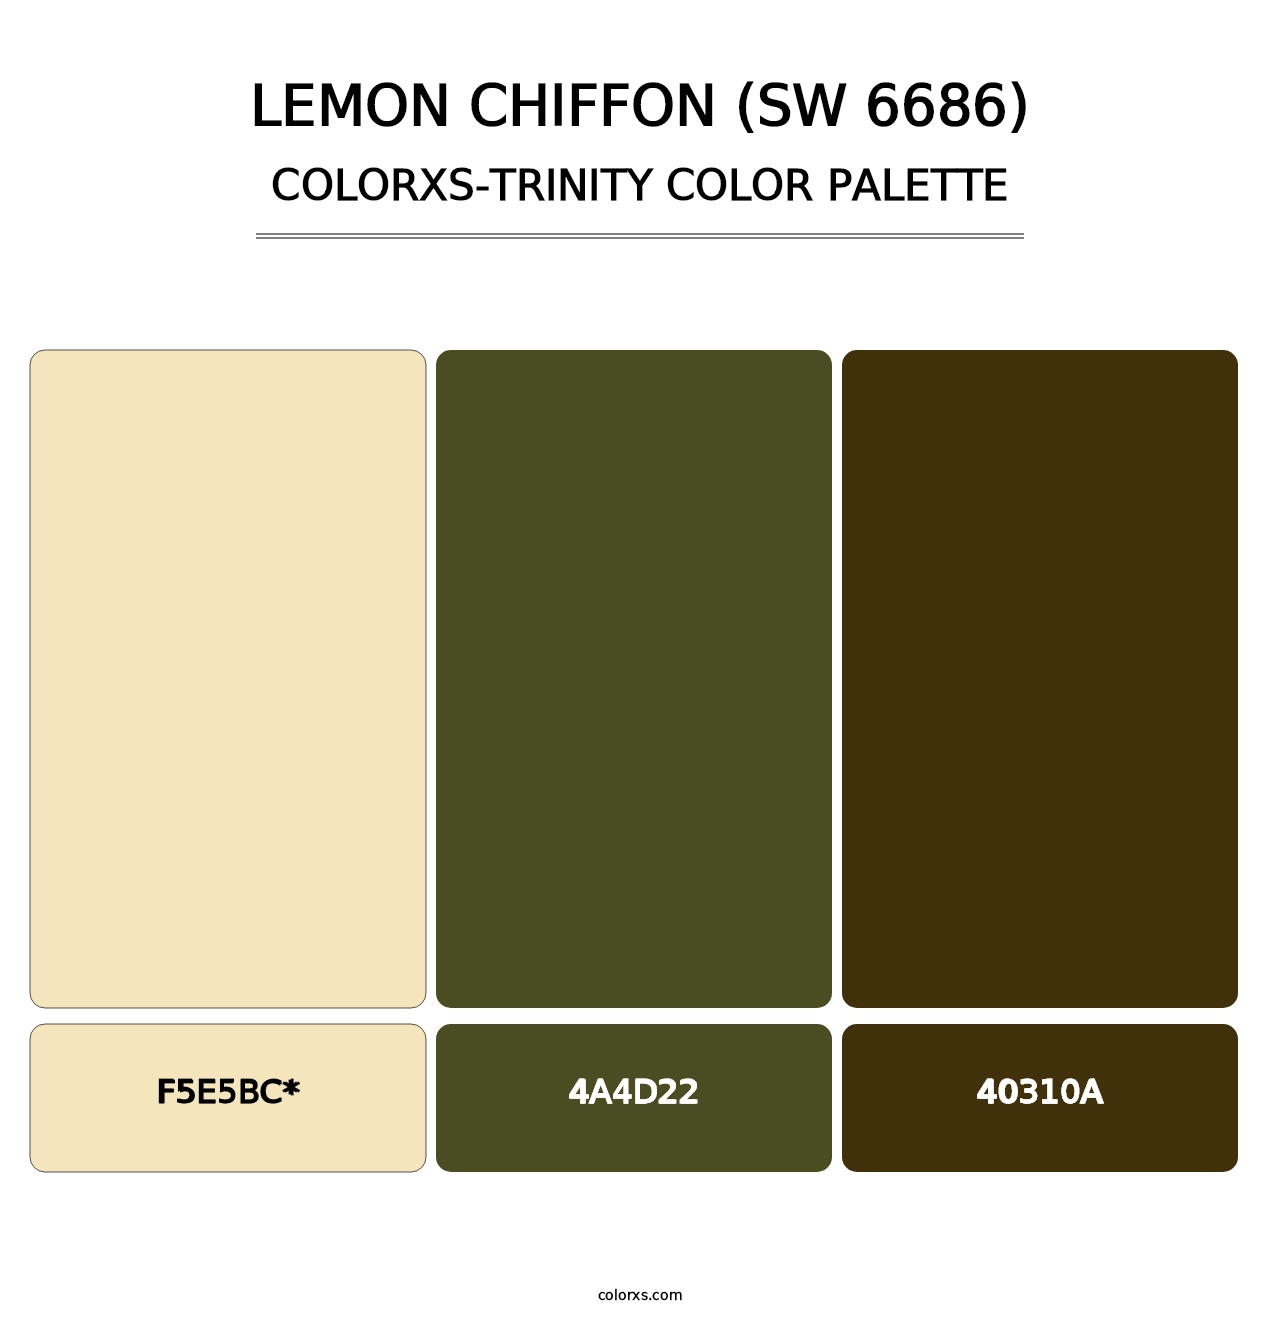 Lemon Chiffon (SW 6686) - Colorxs Trinity Palette